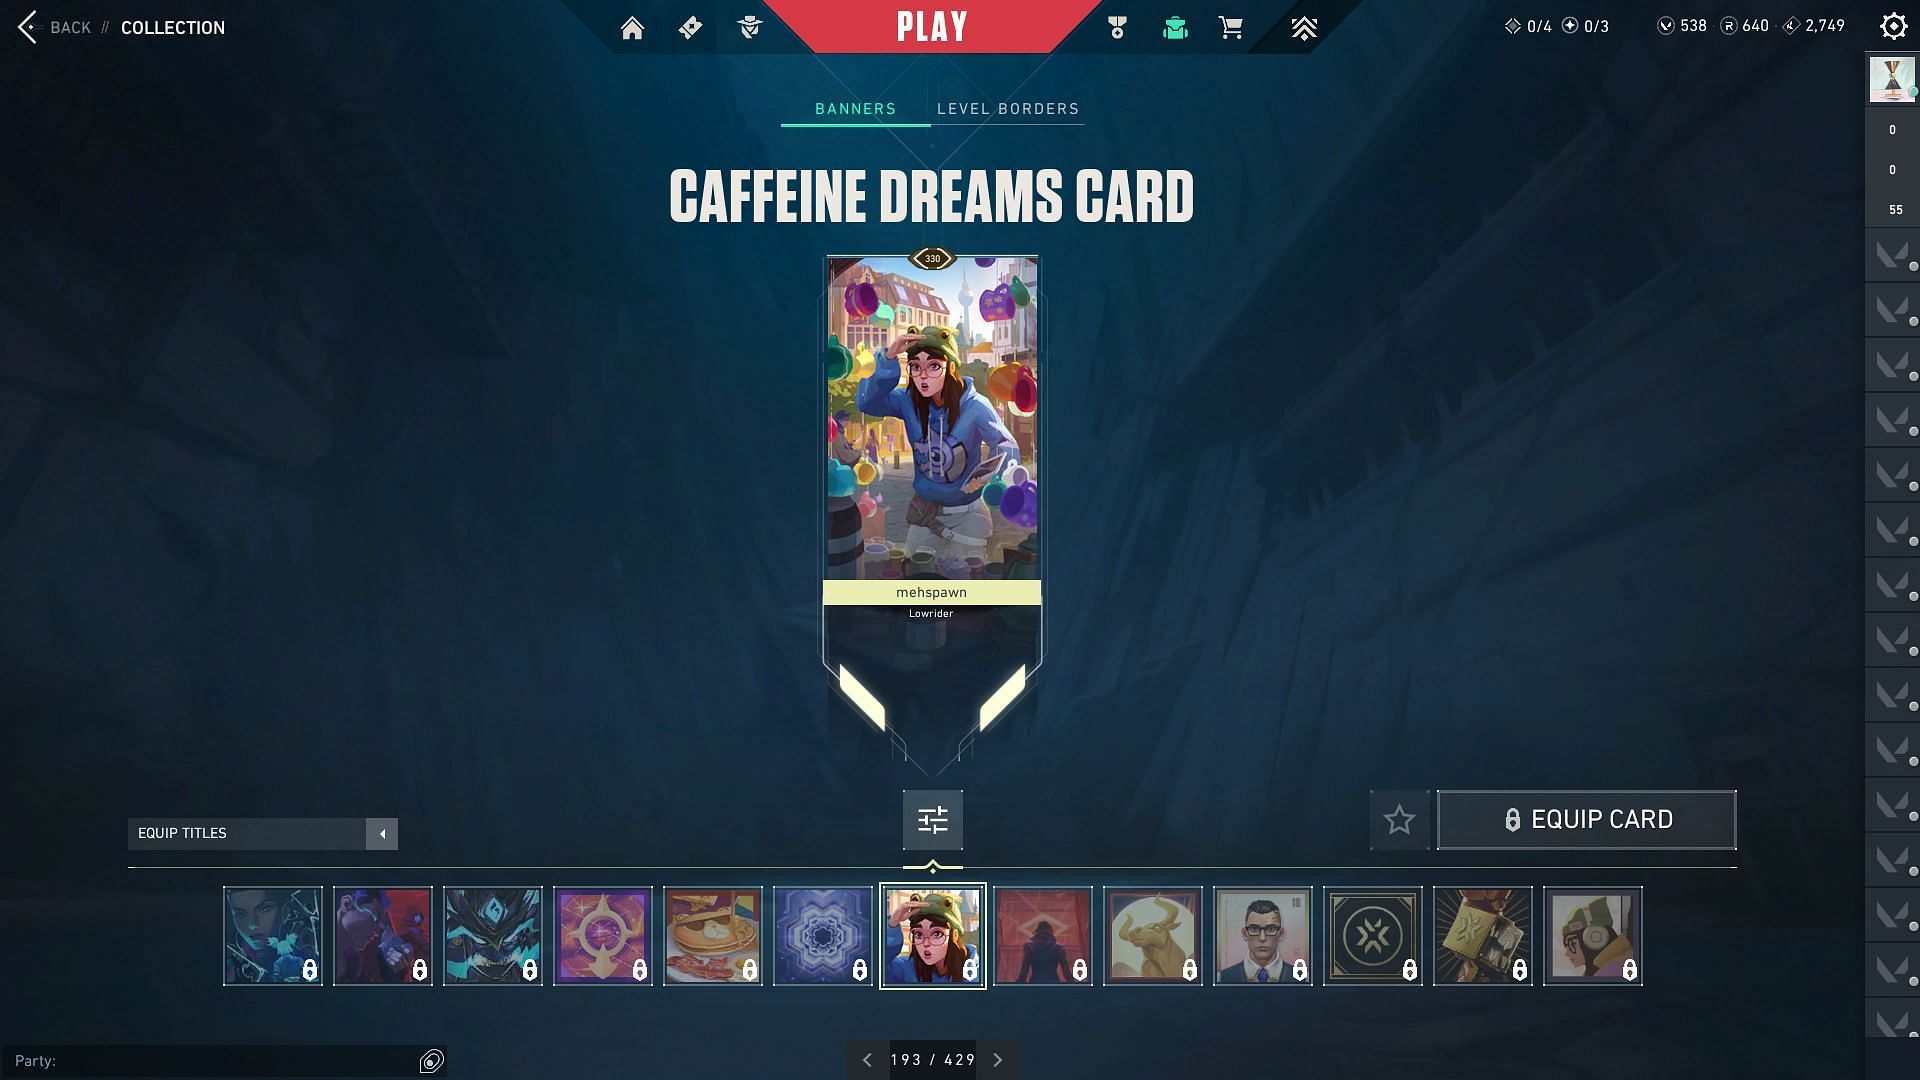 The Caffeine Dreams Player Card (Image via Riot Games)